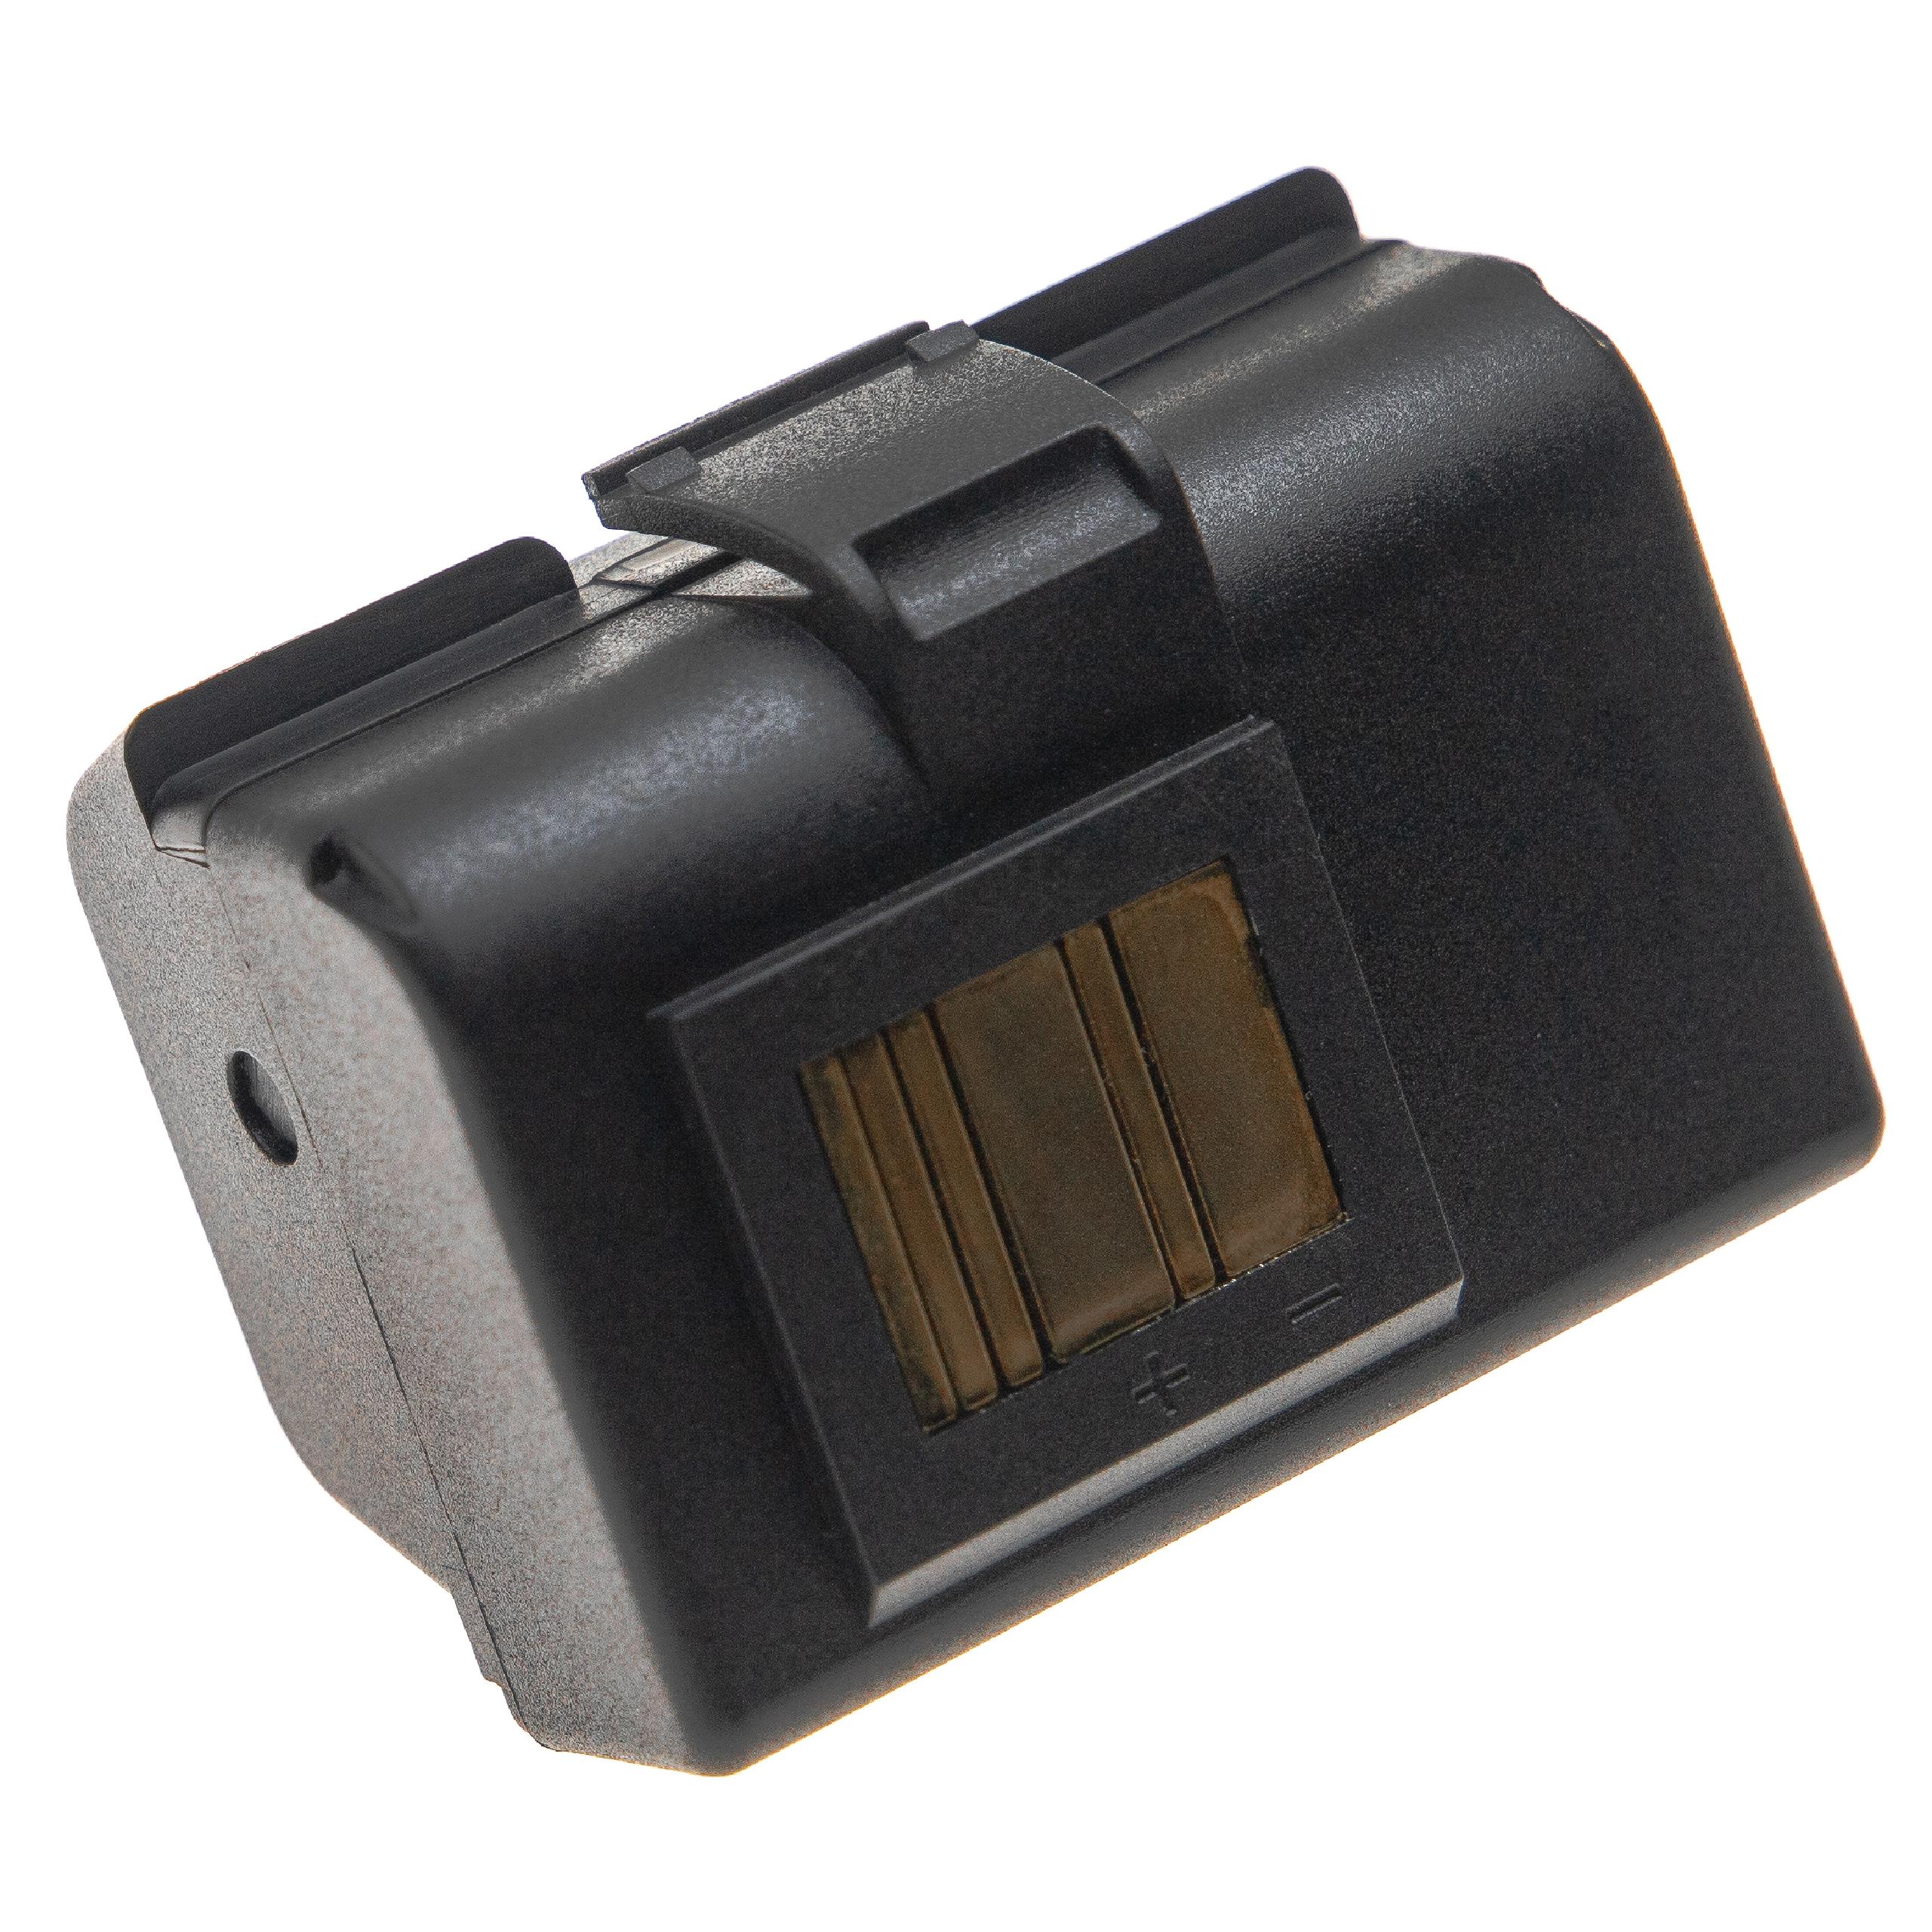 Akumulator do drukarki / drukarki etykiet zamiennik Zebra AT16004, BTRY-MPP-34MA1-01 - 6800 mAh 7,4 V Li-Ion